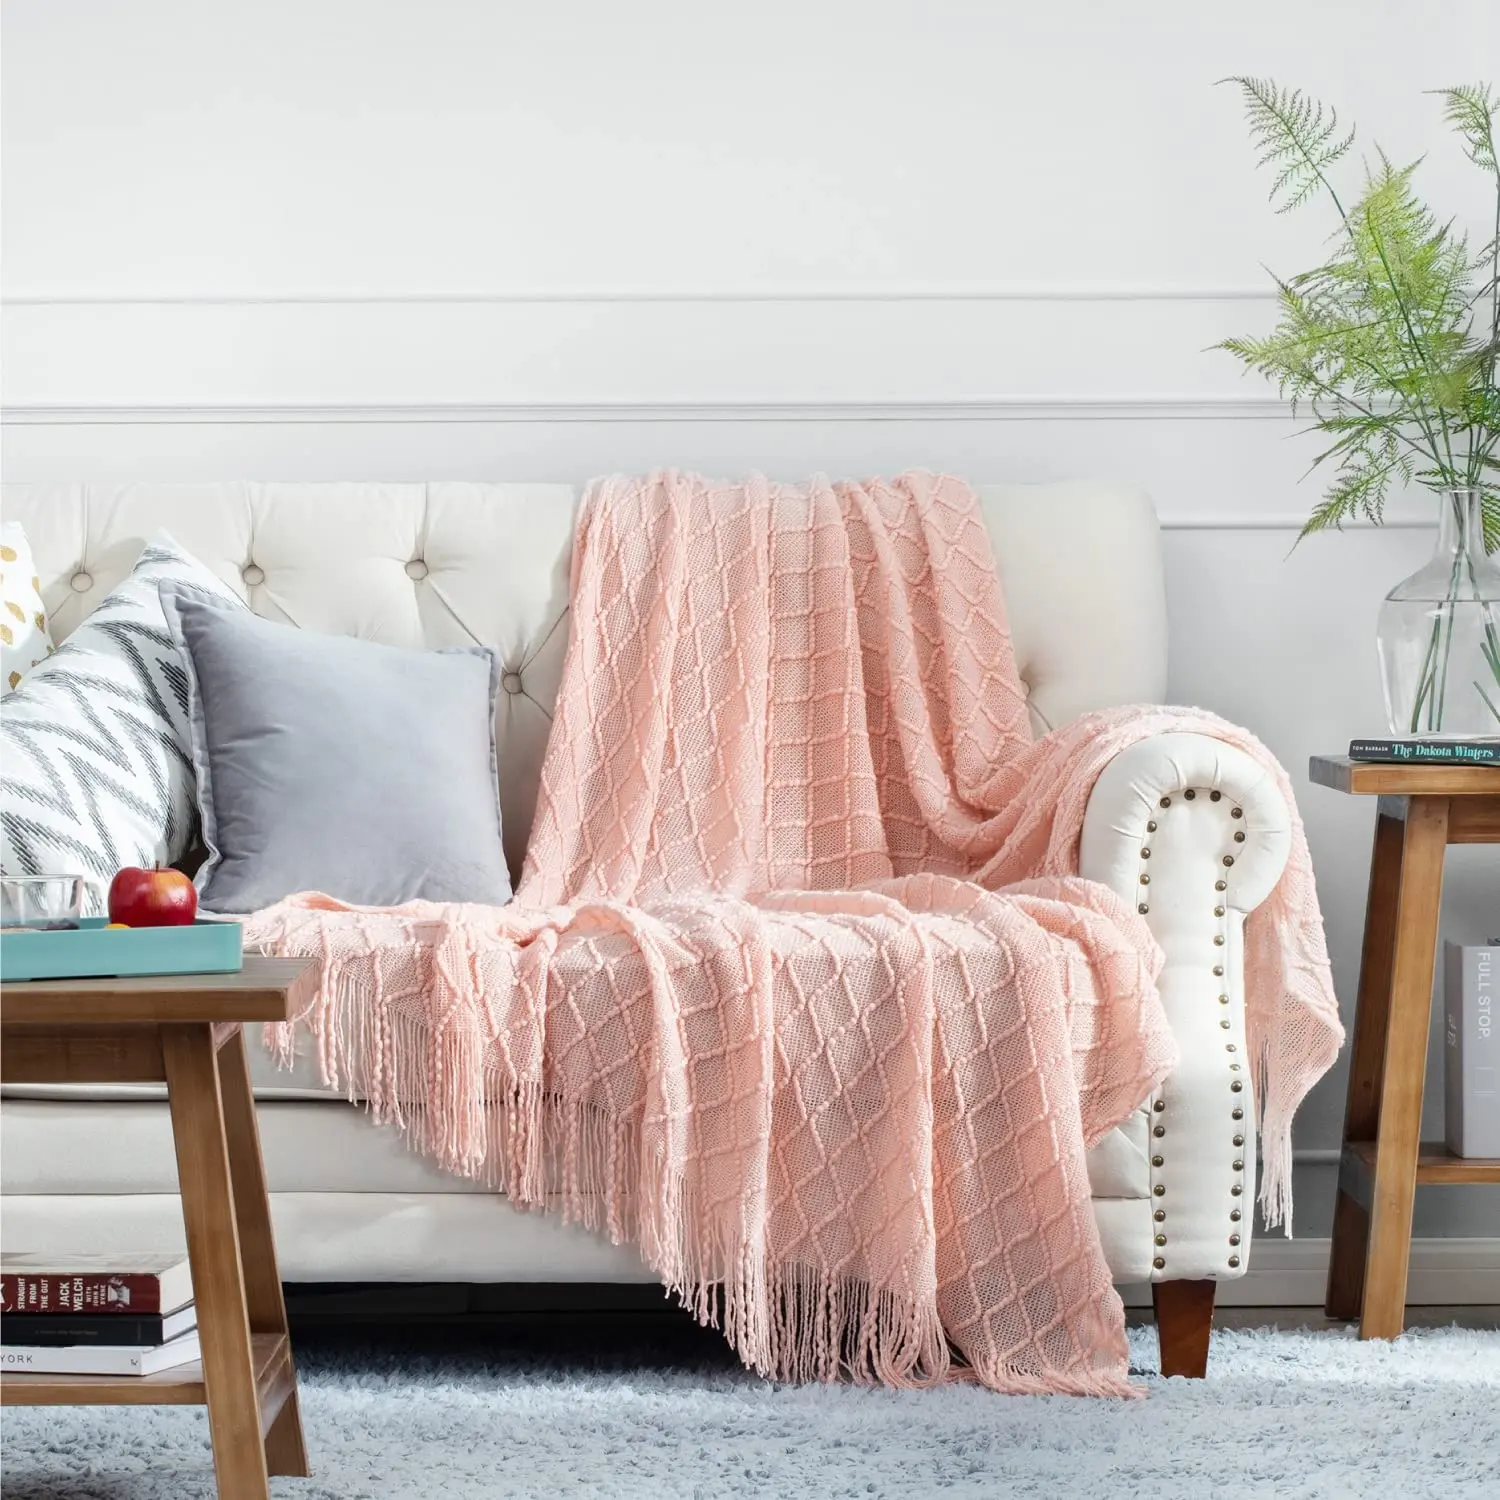 Bindi große weiche gemütliche leichte dekorative Sommer rosa Quasten werfen Decke für Wohnzimmer Bett Sofa Reisen